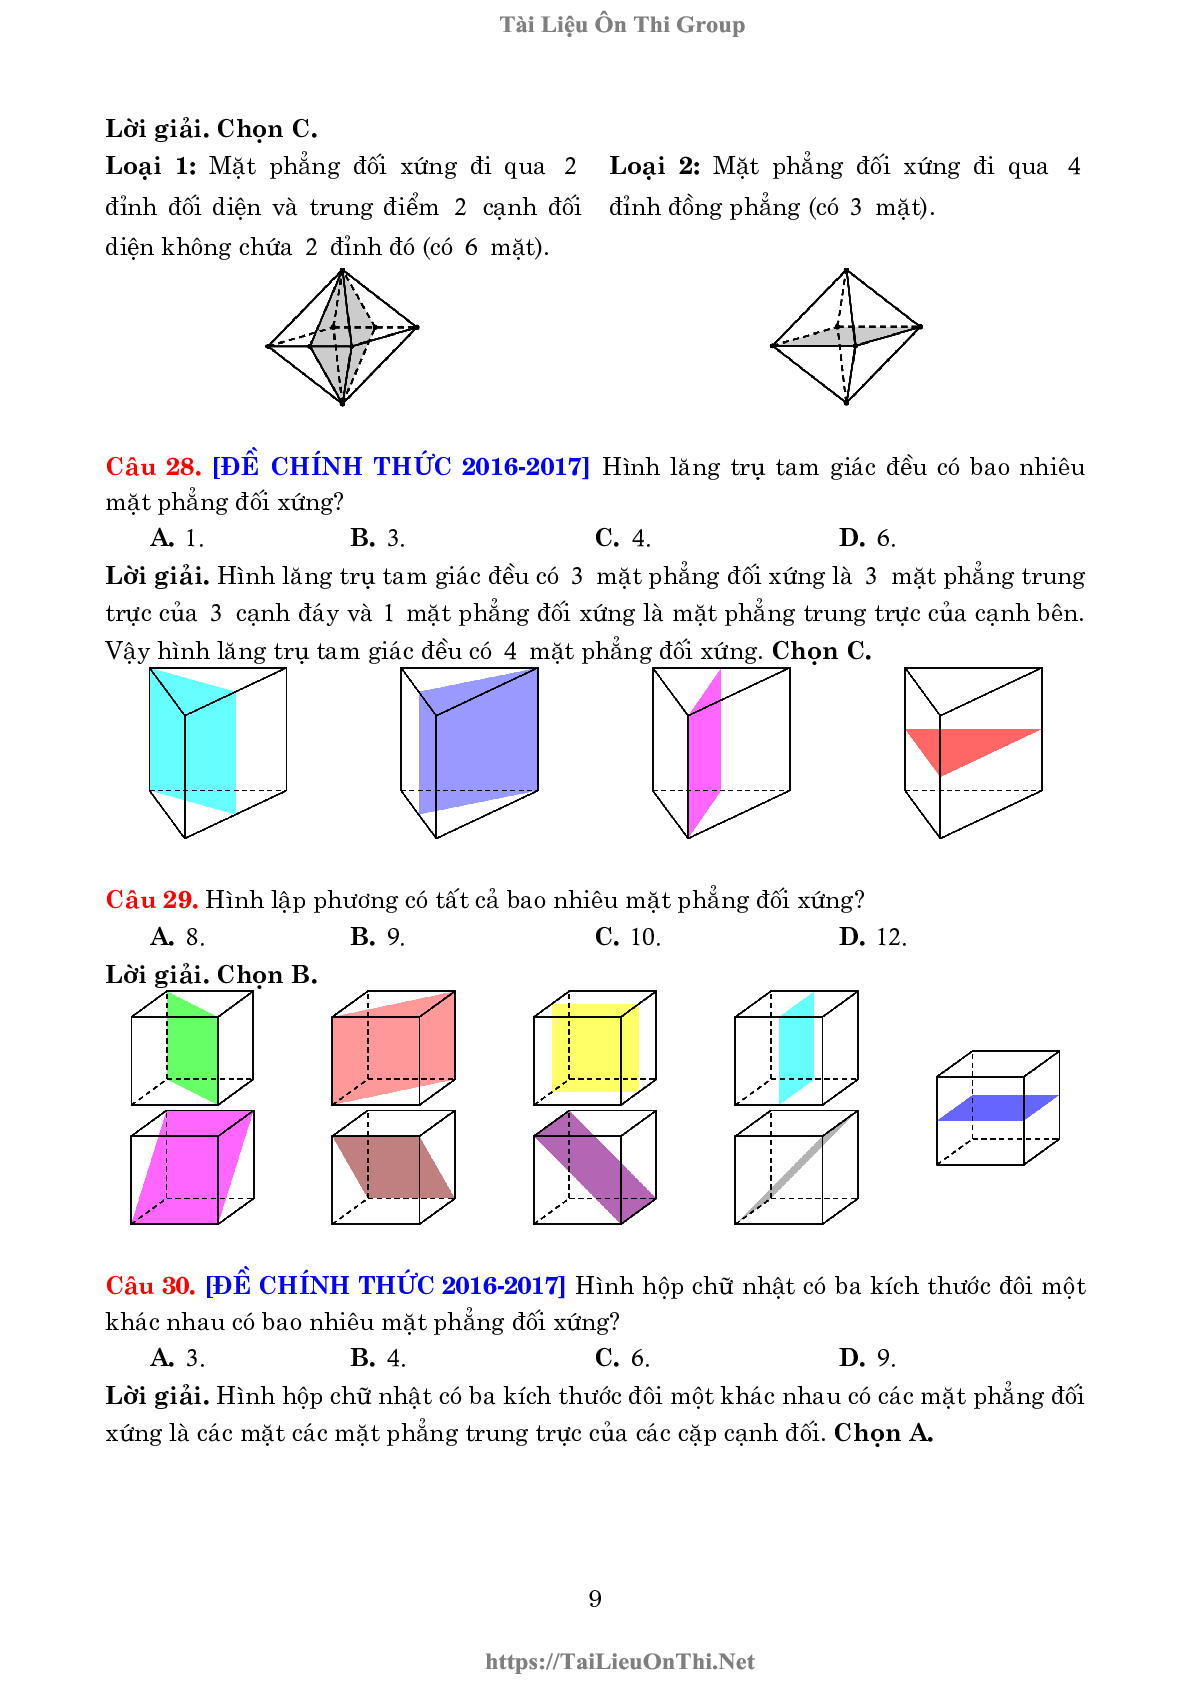 Lý thuyết và bài tập về khối đa diện và thể tích của chúng (trang 9)